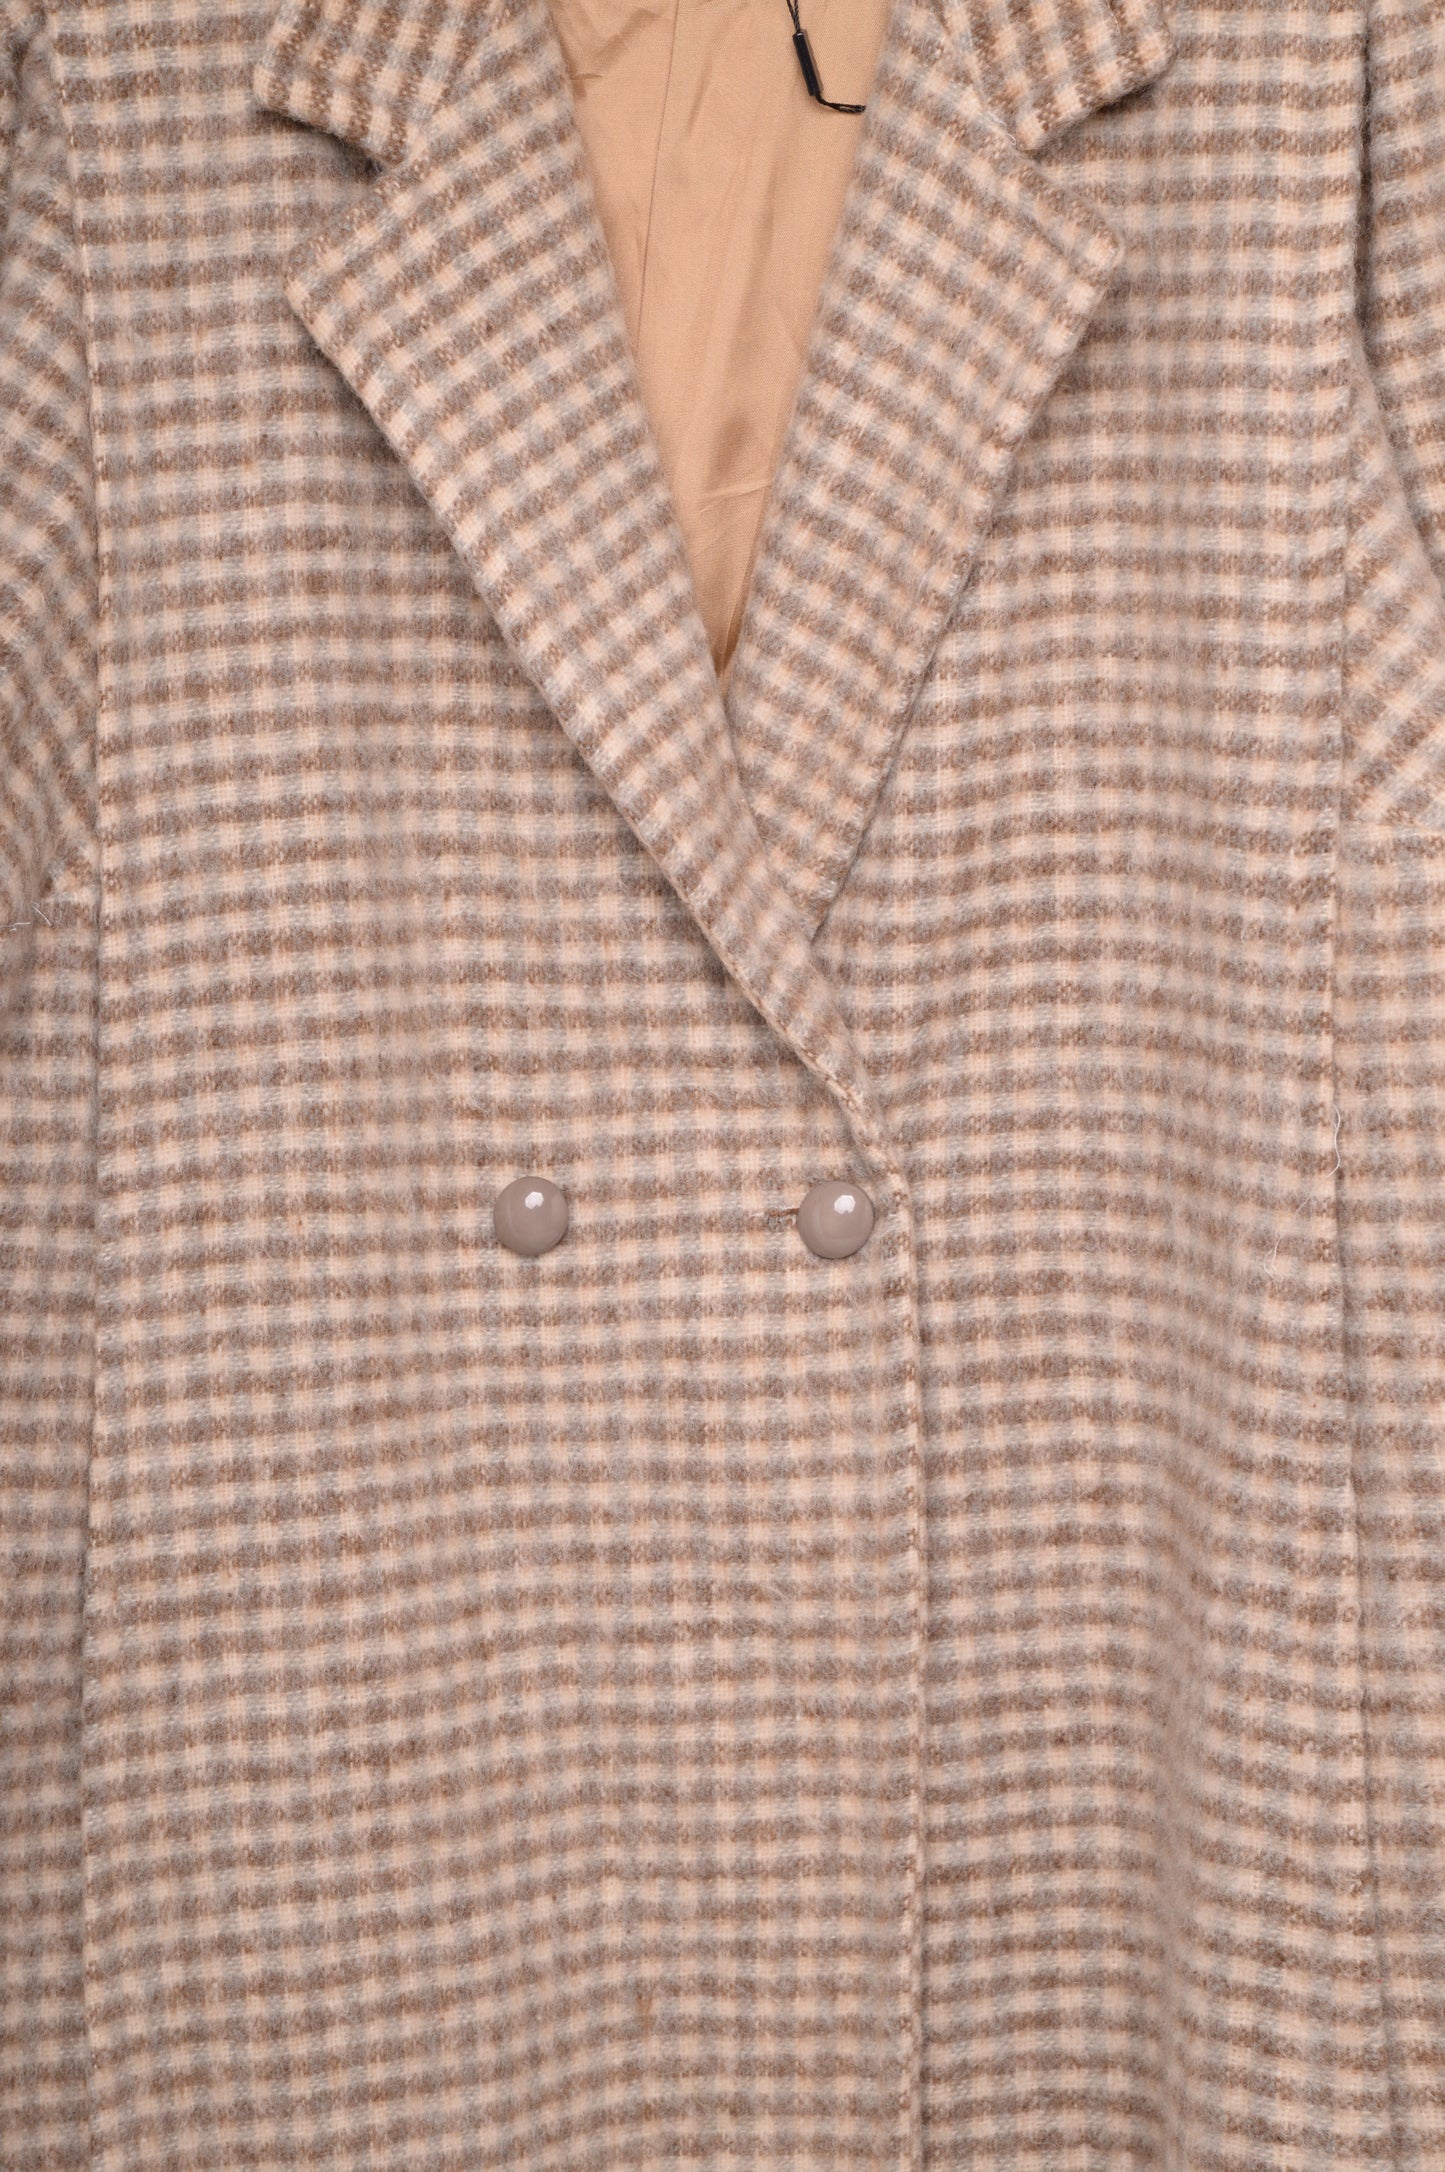 Plaid Wool Coat USA